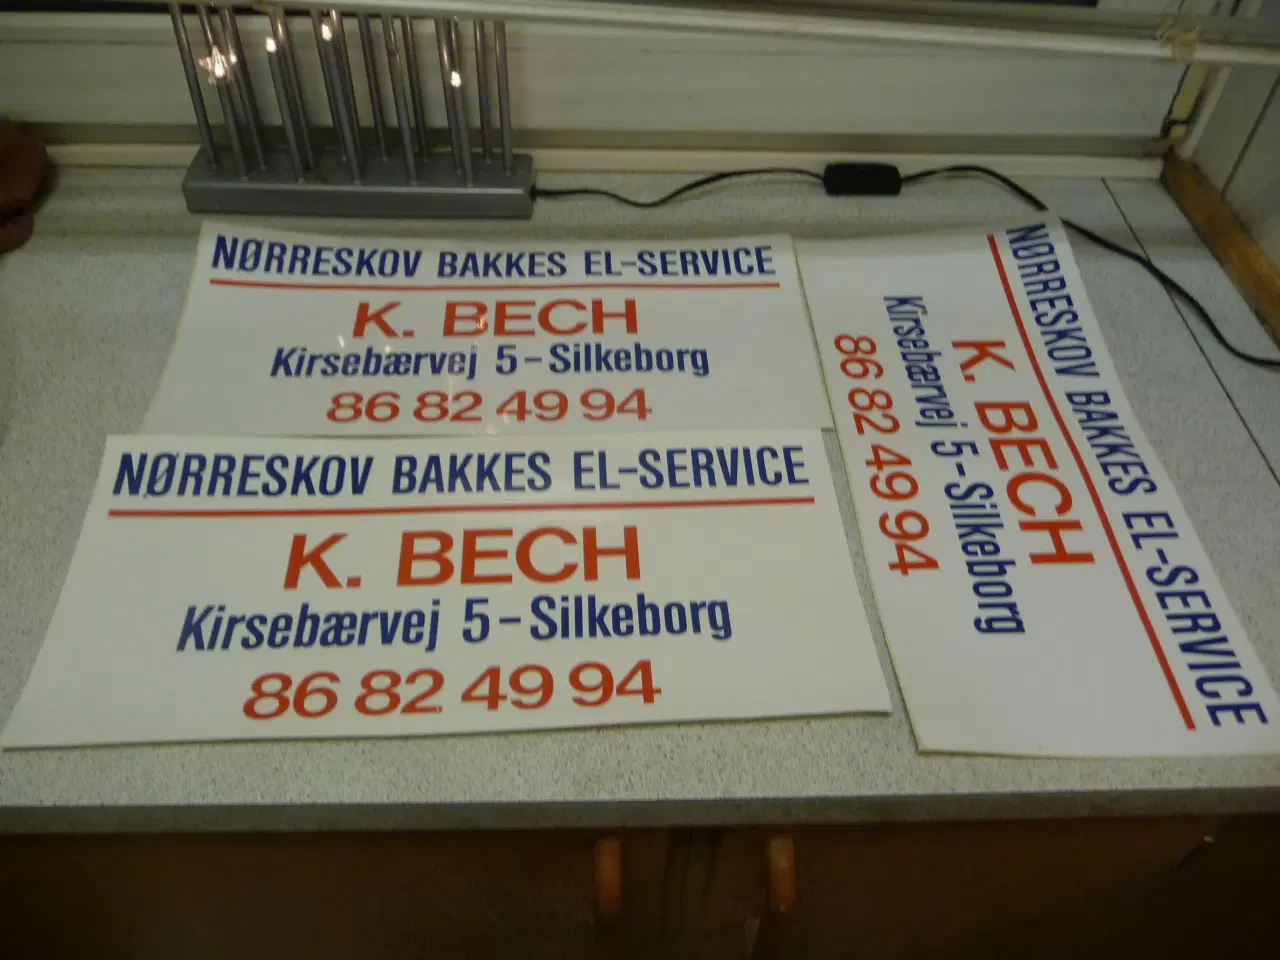 Billede 1 - Nørreskov bakkes el-service klistermærke